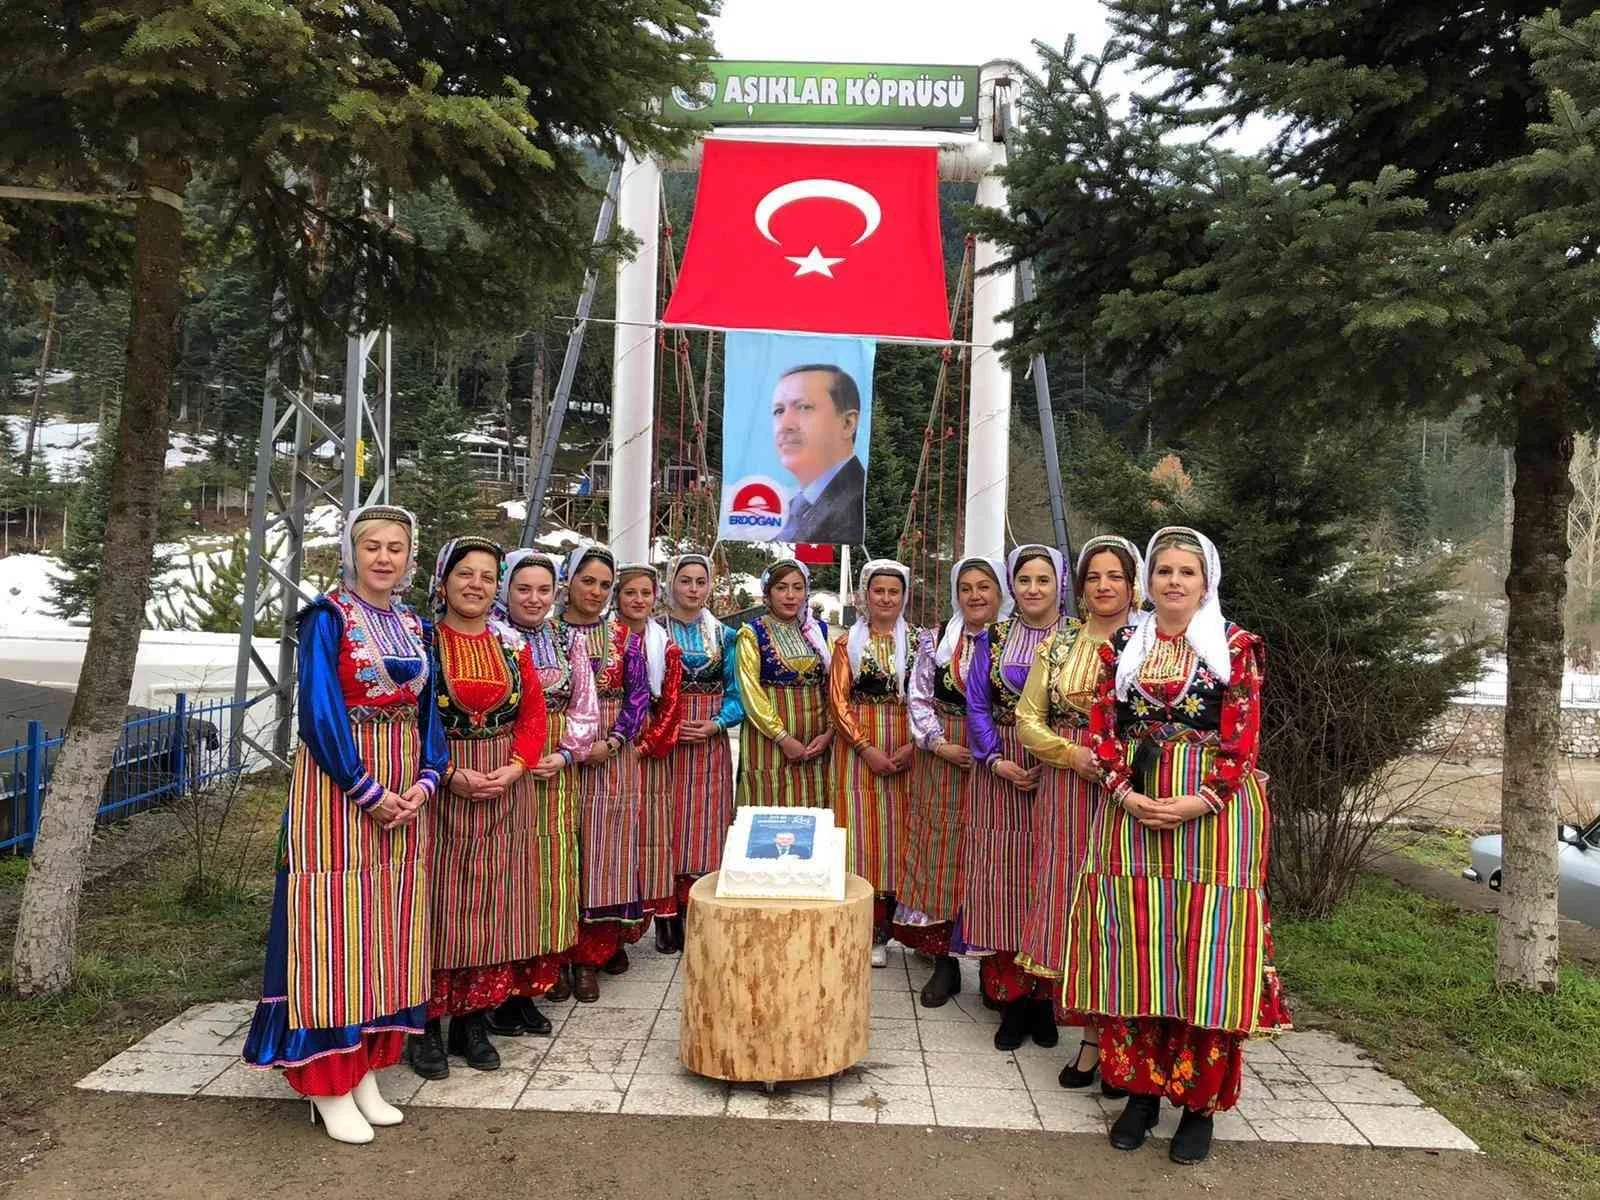 Yöresel kıyafetlerini giyip kliple Cumhurbaşkanı Erdoğanın doğum gününü kutladılar